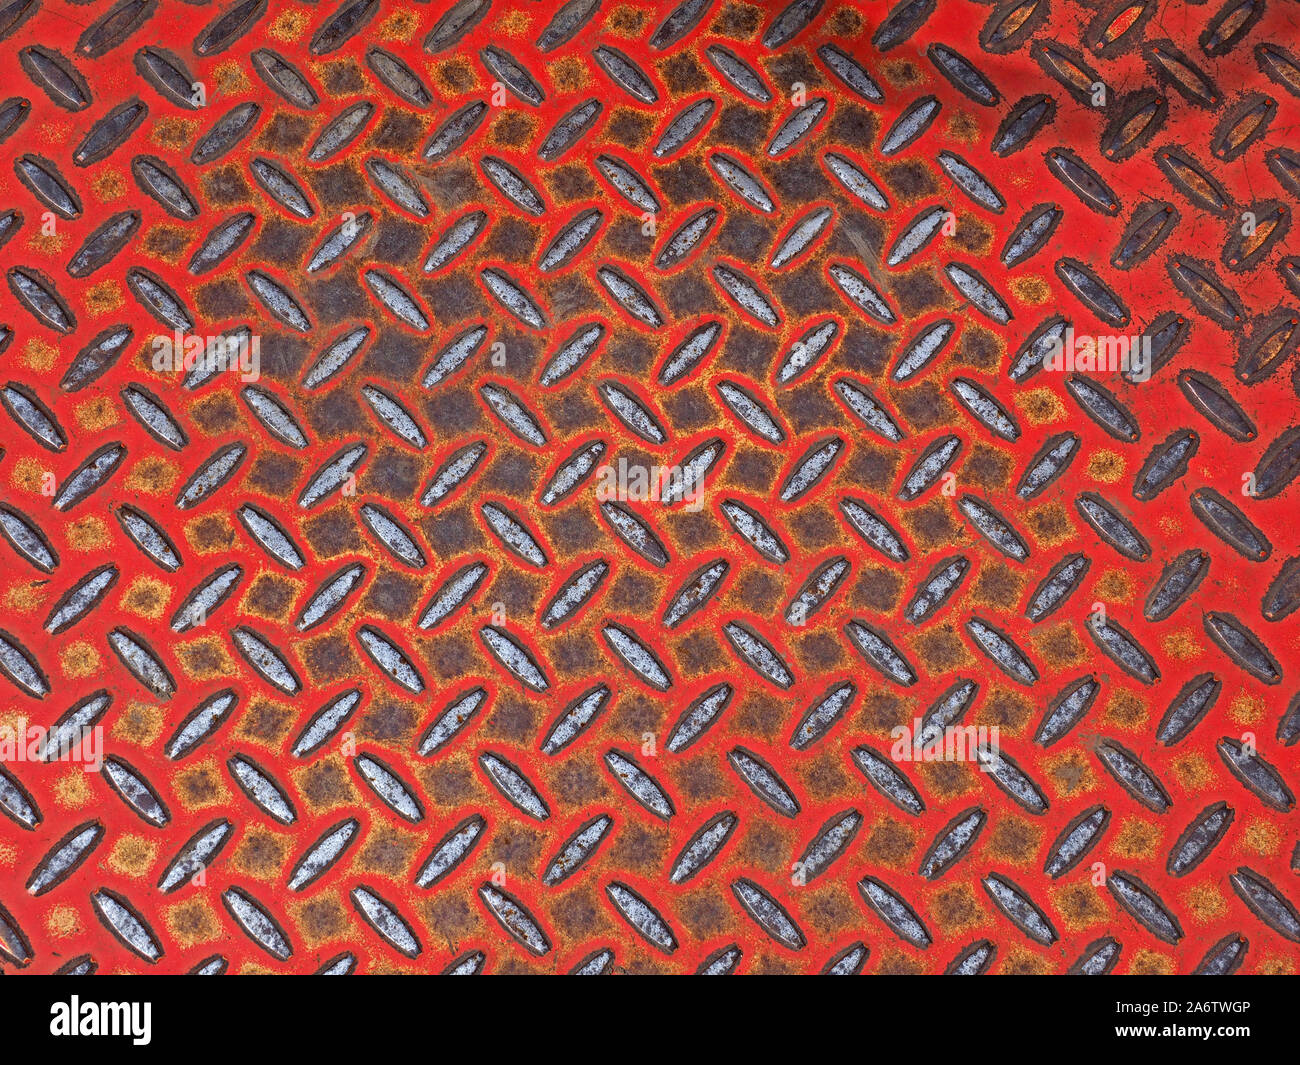 Luminoso schema simmetrico della piastra in acciaio con brillanti ellissoide sollevata impugnatura di sicurezza dove la vernice rossa ha usurato - irregolare forme rettangolari in spazi vuoti Foto Stock